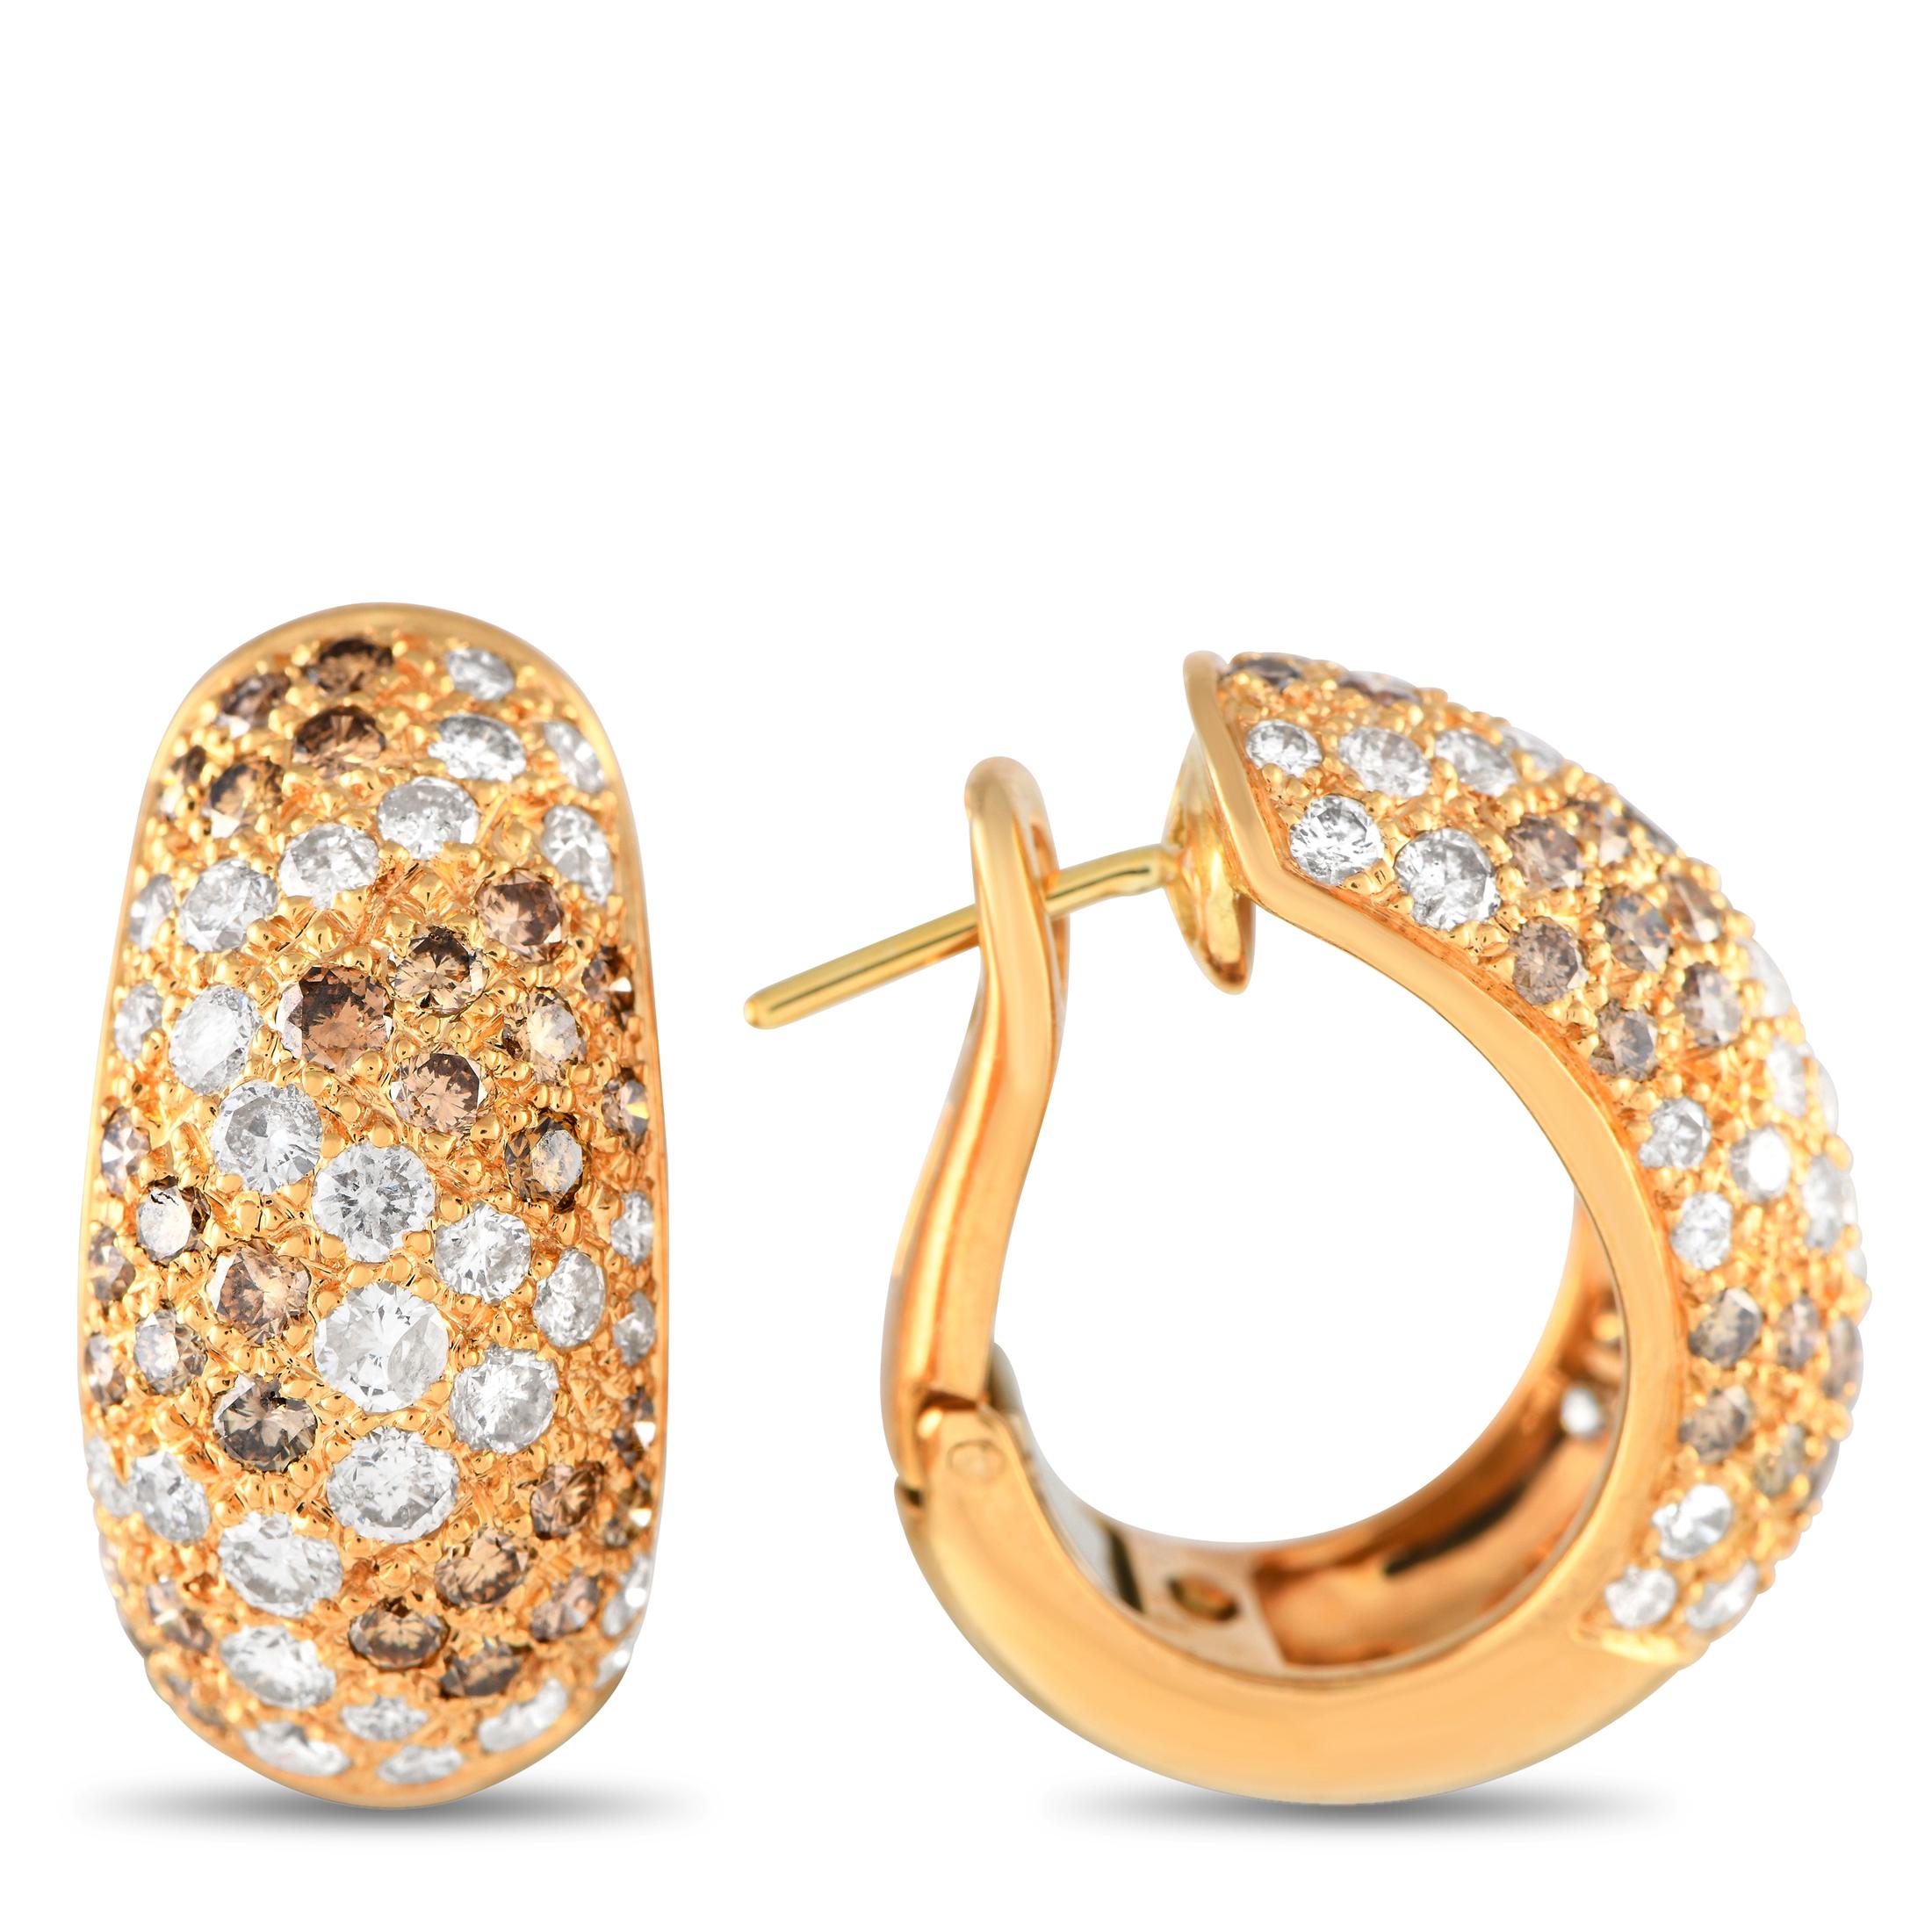 Mehrfarbige Diamanten verleihen diesen beeindruckenden Cartier Sauvage Ohrringen Textur, Dimension und optische Wirkung. Die raffinierte Fassung aus 18 Karat Gelbgold ist 0,85 cm lang und 0,75 cm breit und weist ein zart geschwungenes Design auf.